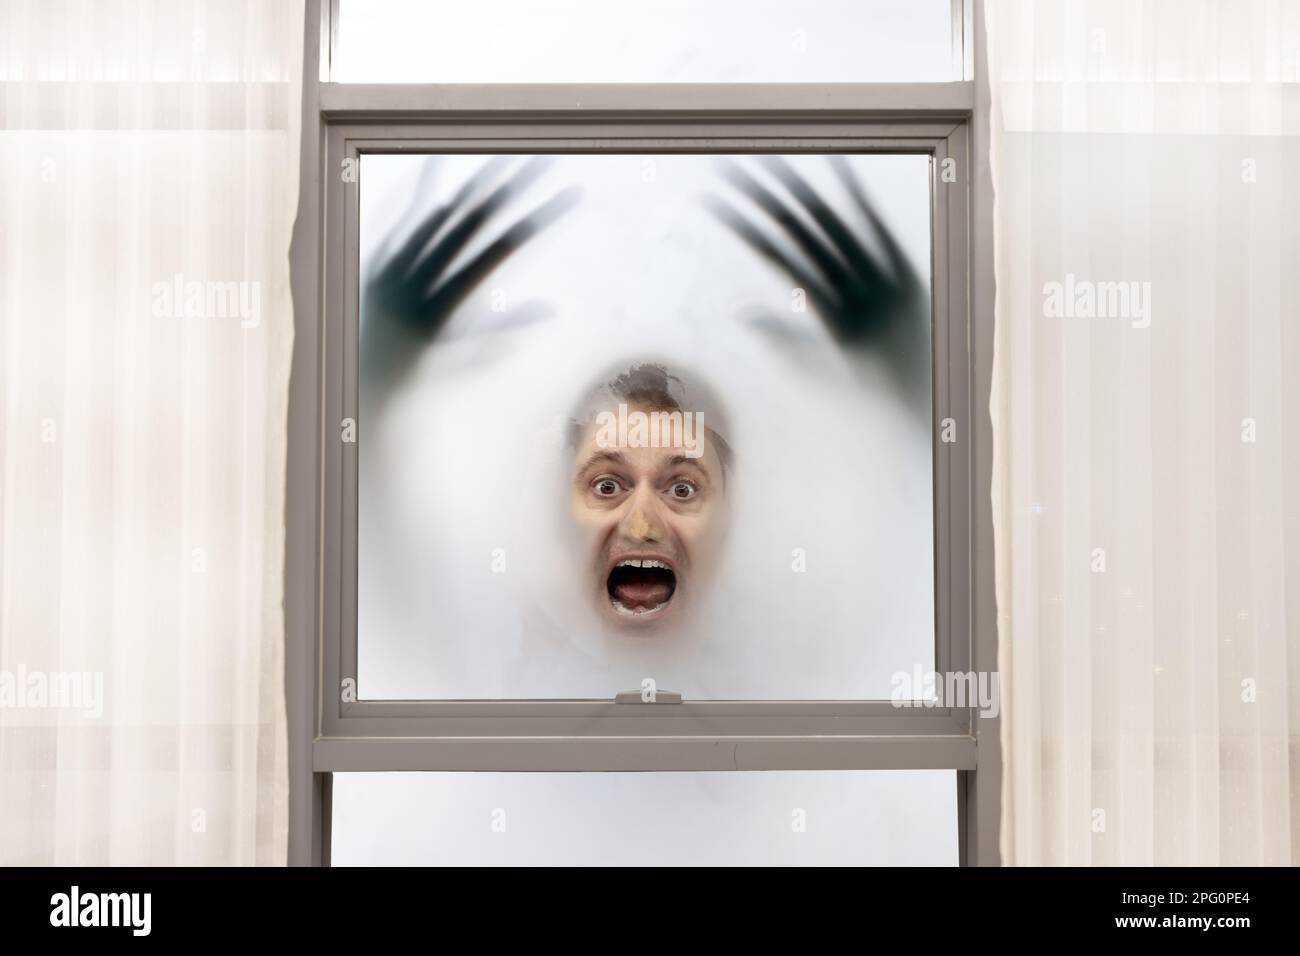 Schreiender Mann mit verschwommenen Händen hat sein Gesicht gegen das Fenster gedrückt auf einem nebligen Hintergrund Stockfoto